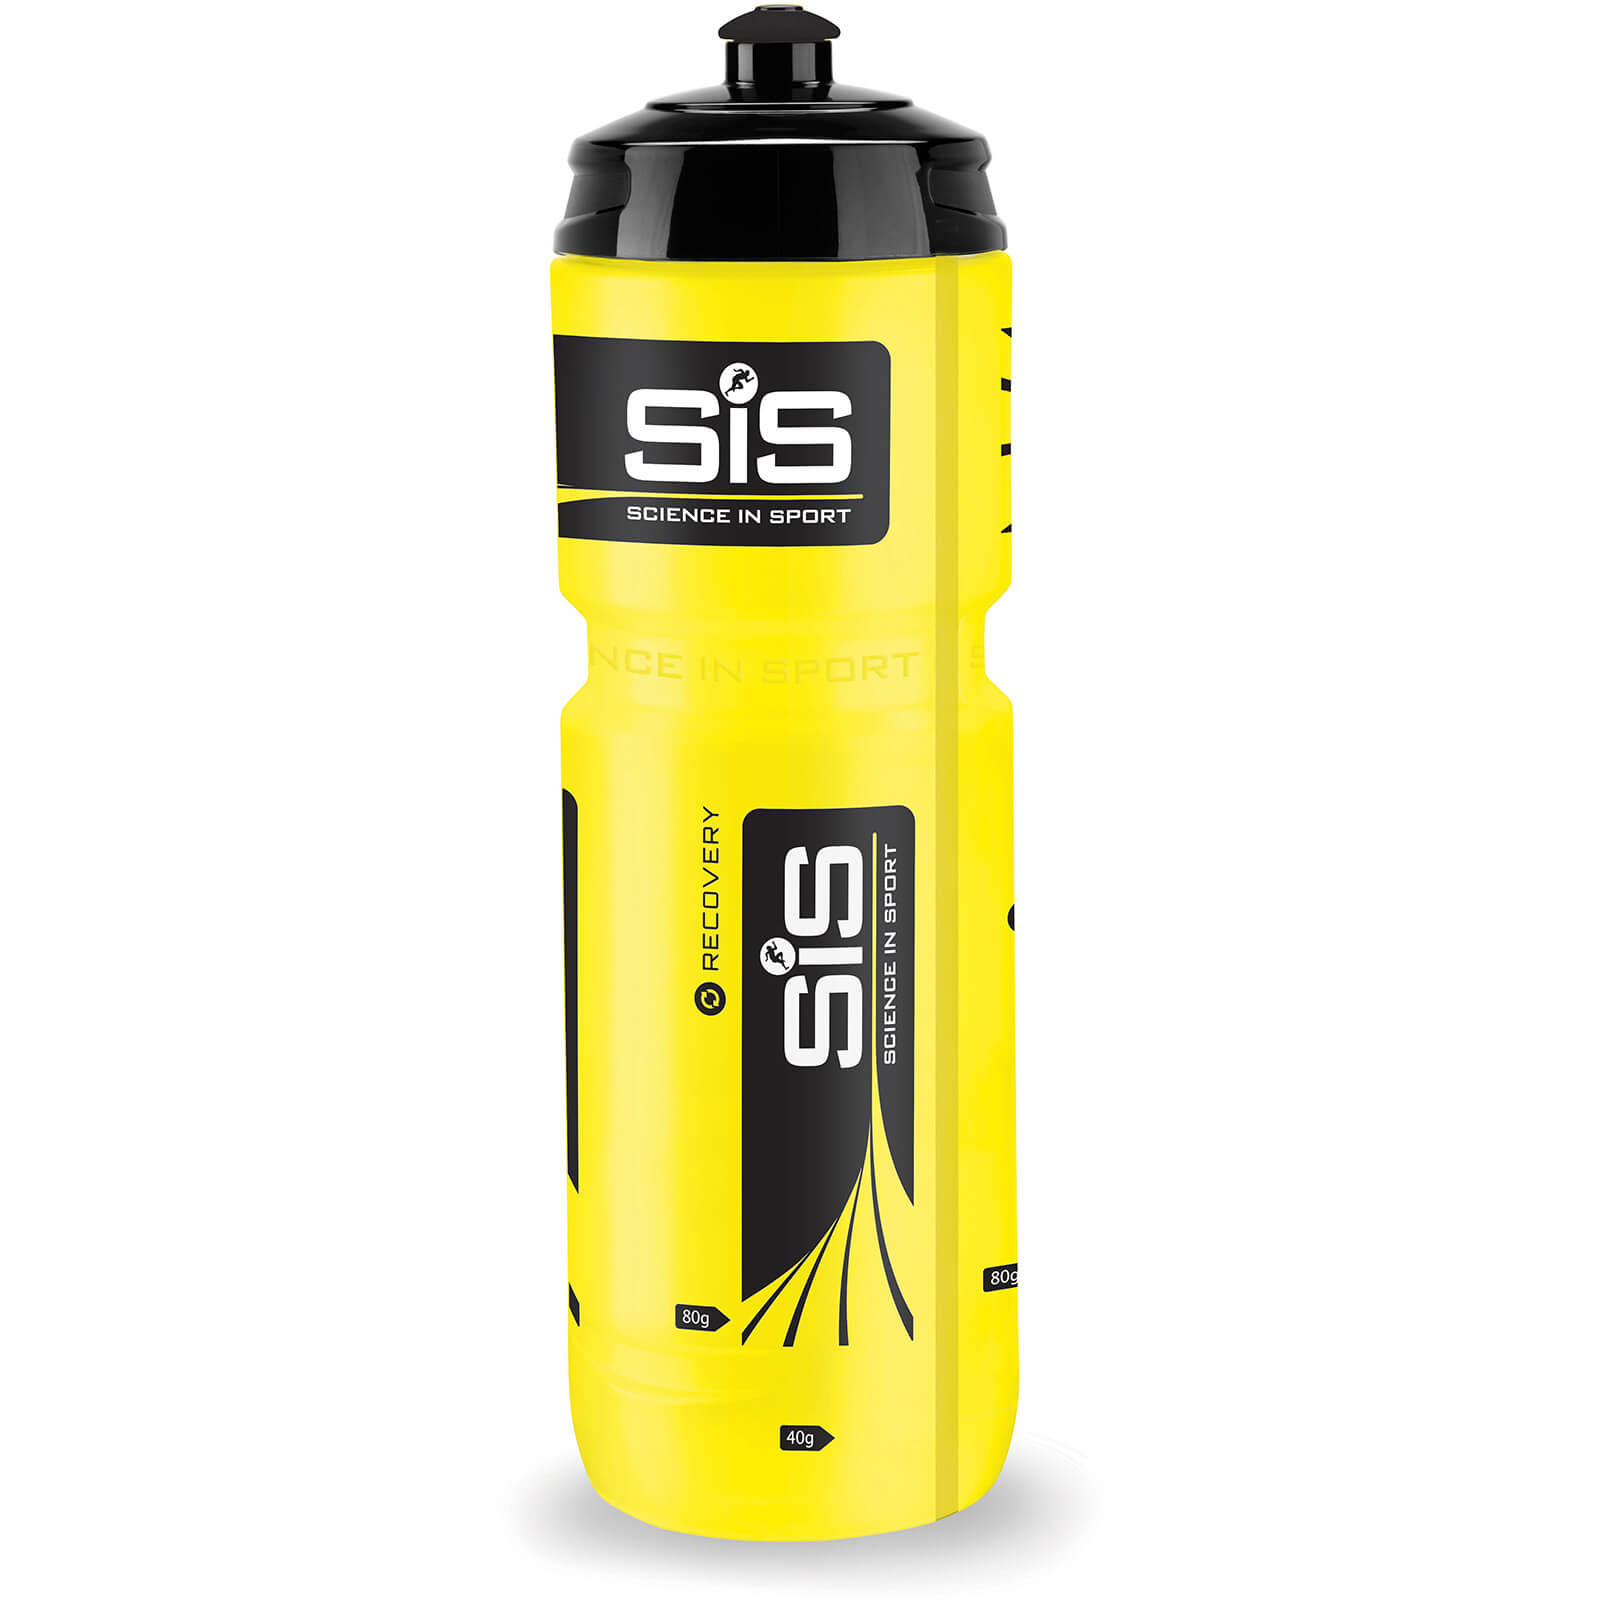 Science in Sport Water Bottle - 800ml - 800ml - Yellow